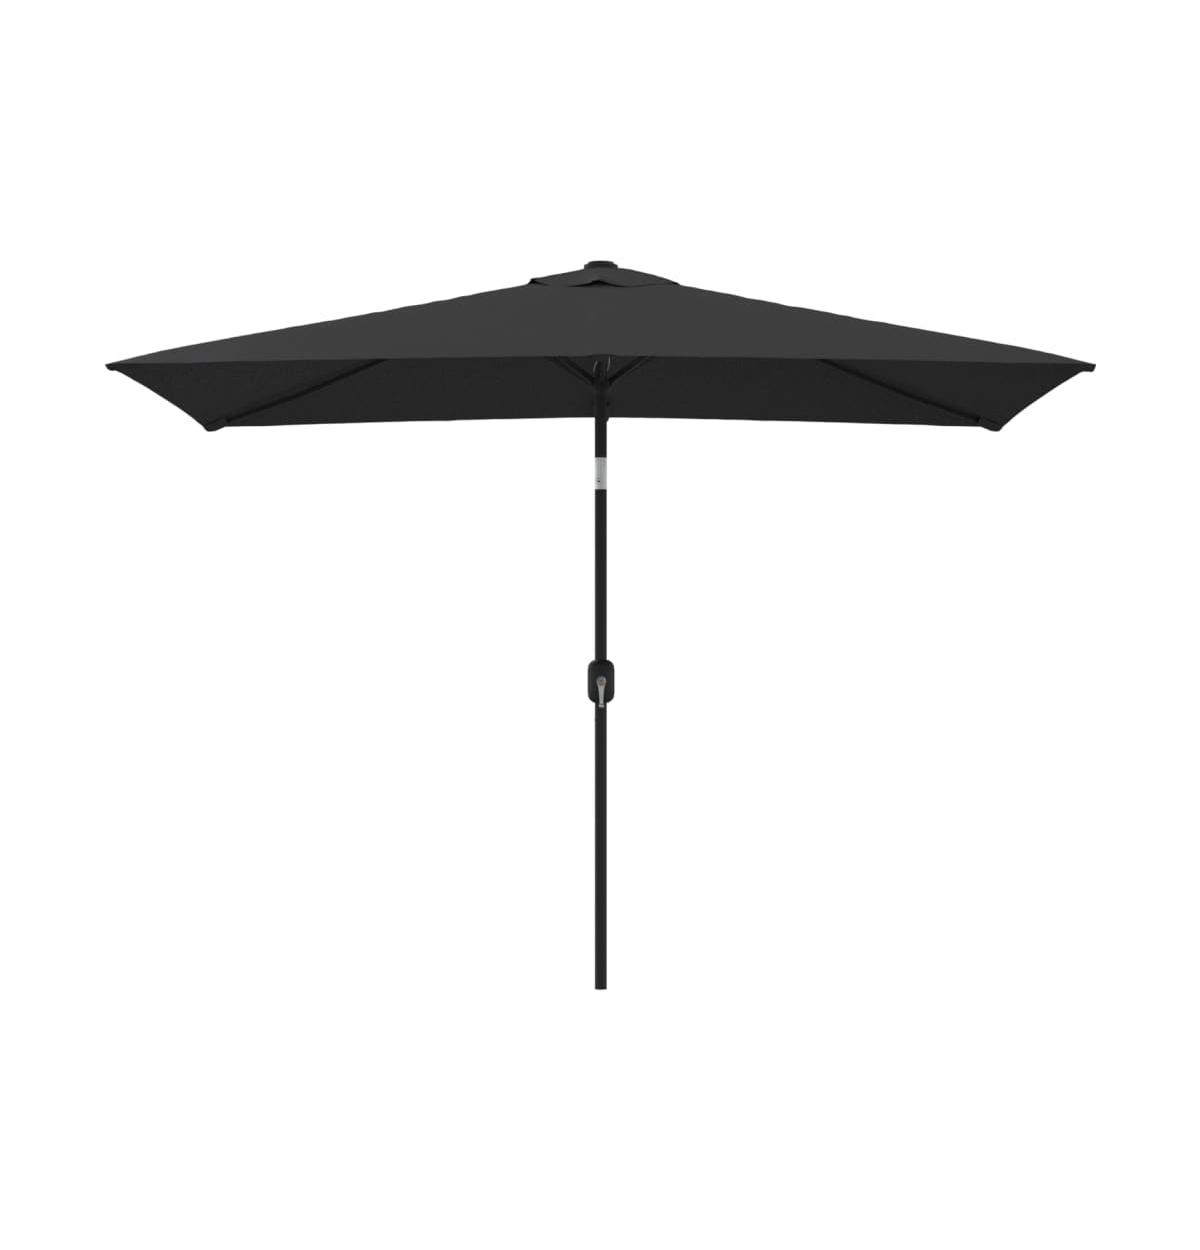 Outdoor Parasol with Metal Pole 118"x78.7" Black - Black